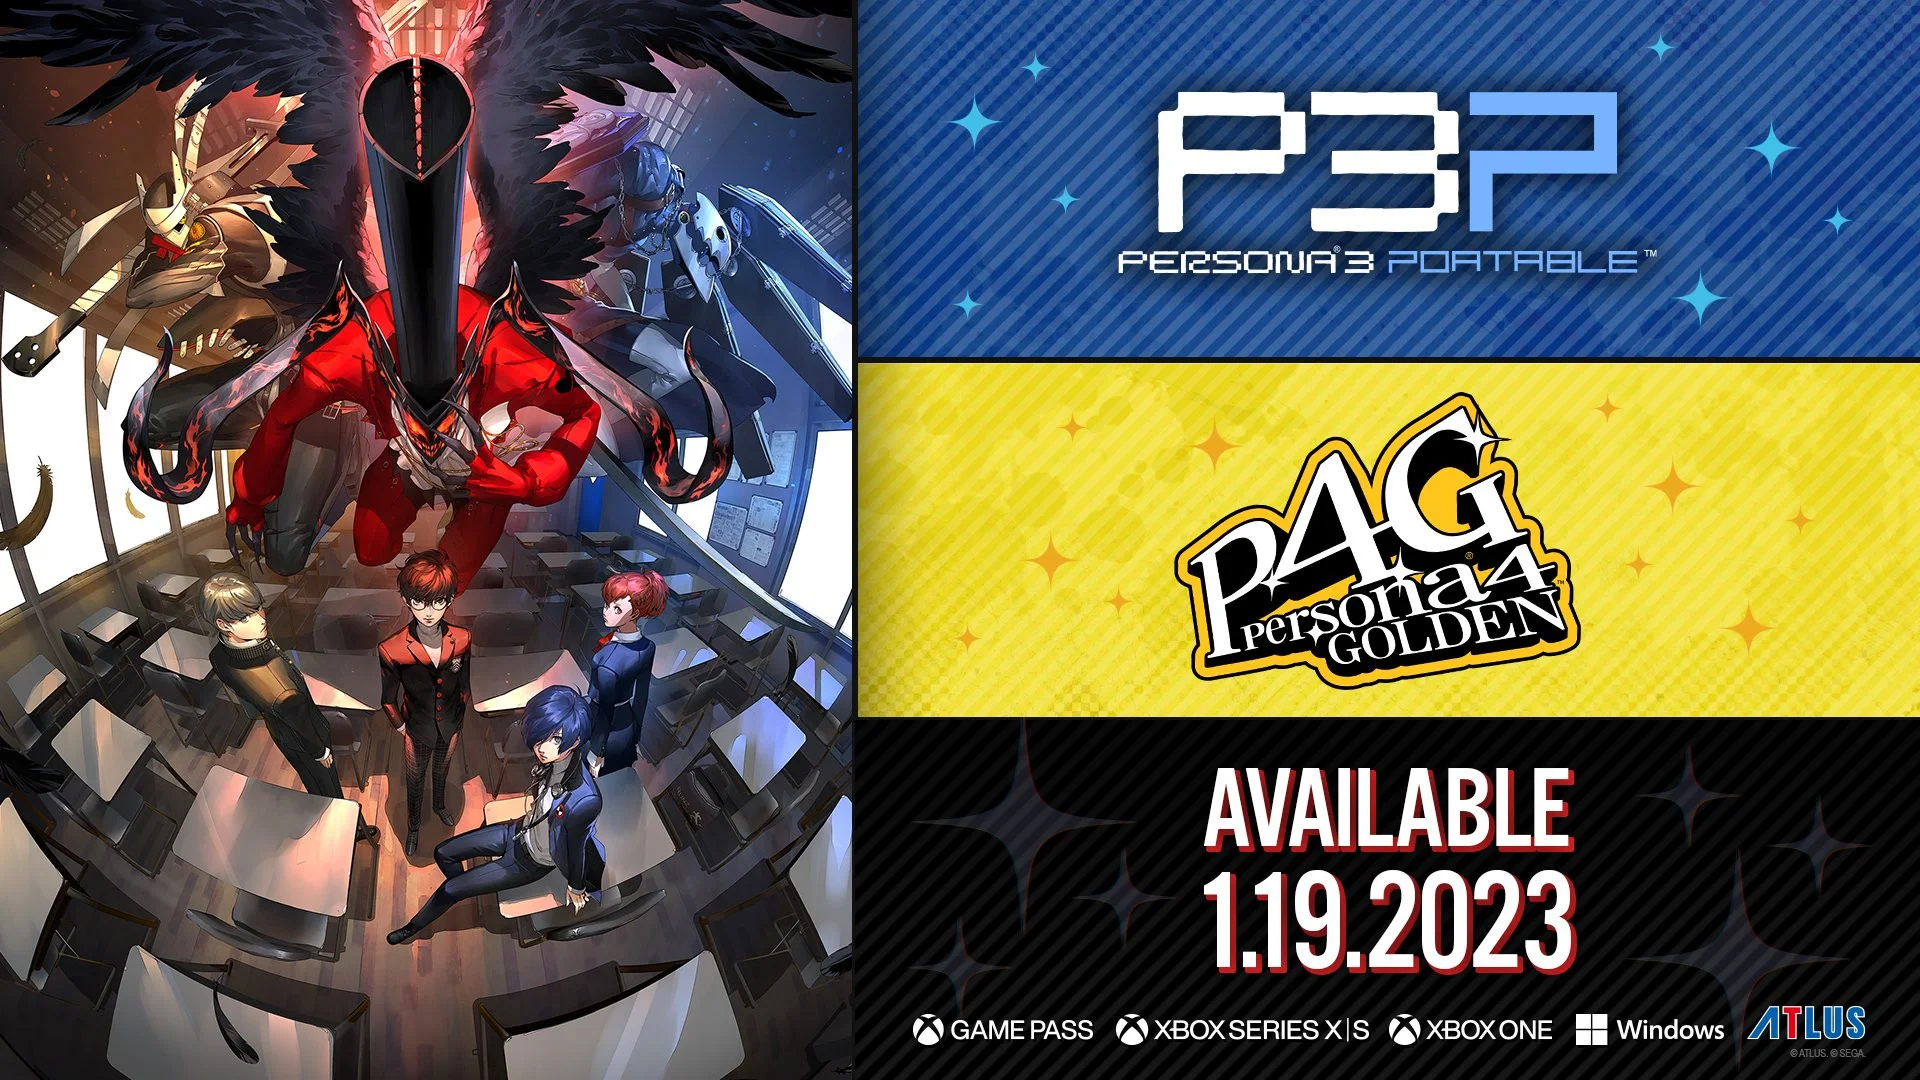 Ремастеры Persona 3 Portable и Persona 4 Golden выйдут 19 января - фото 1